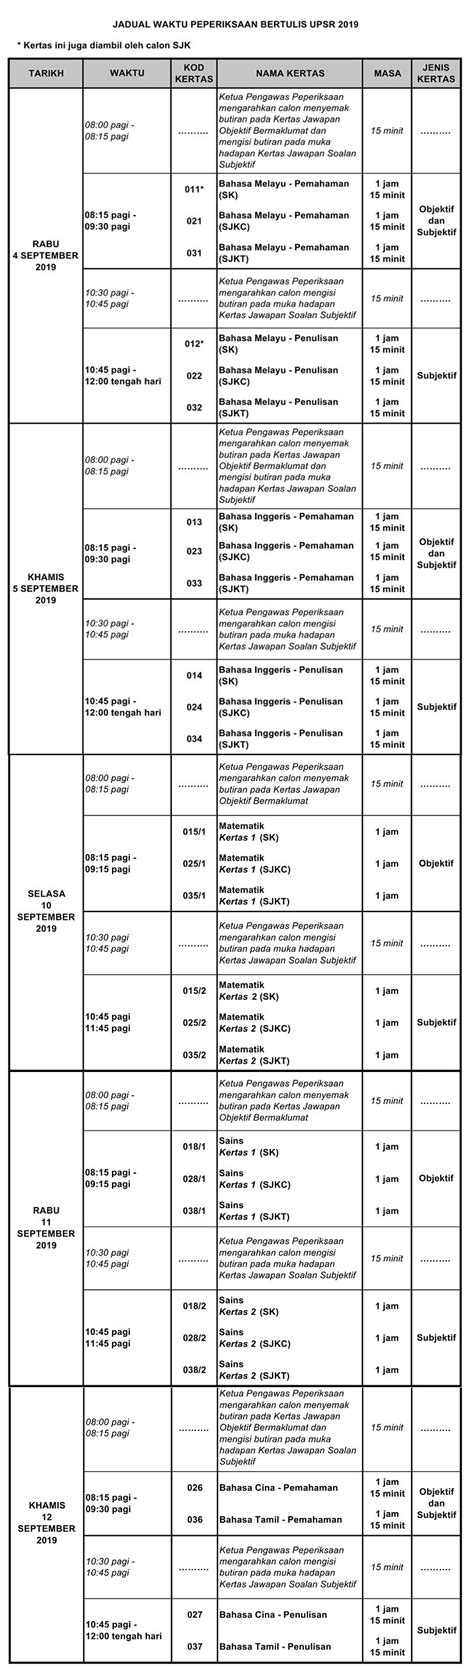 Jom semak tarikh baru peperiksaan yang dikendalikan oleh kpm termasuklah upsr, pt3 dan. Jadual Waktu dan Tarikh UPSR 2019 - UPSR Online